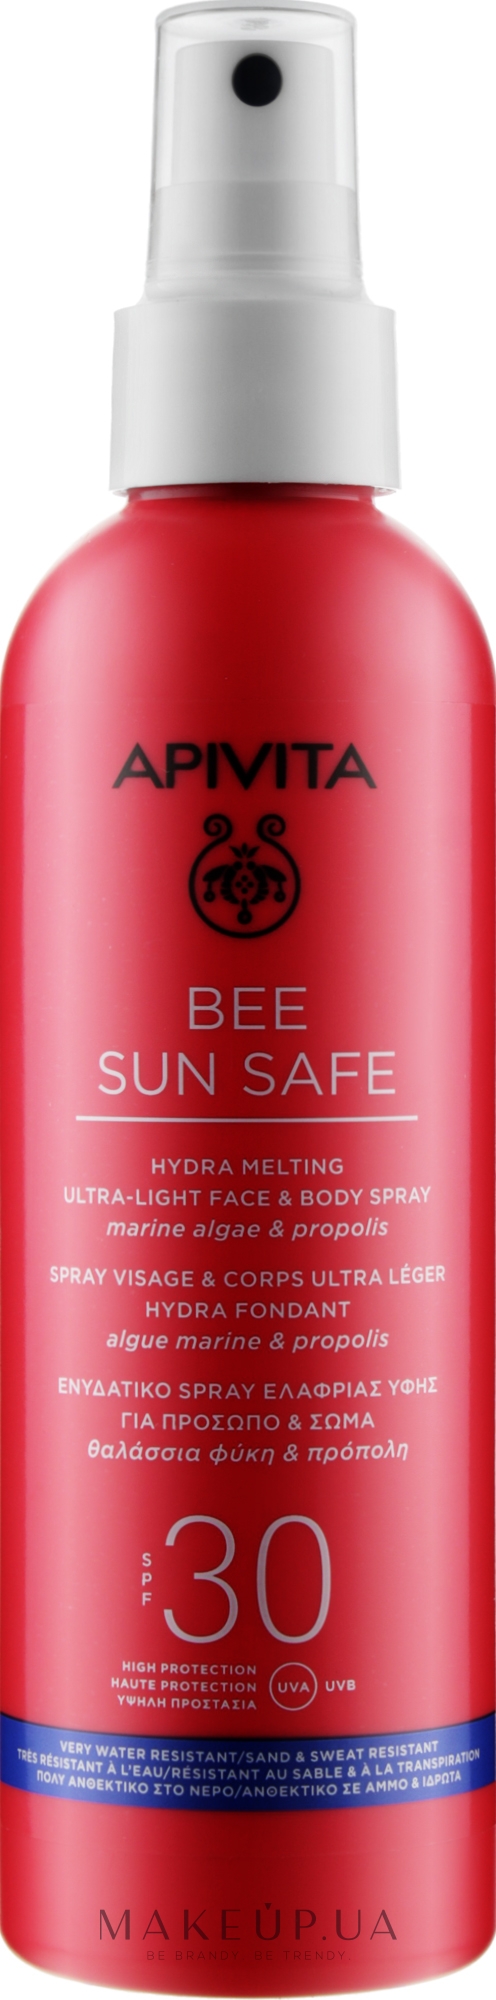 Сонцезахисний спрей для обличчя й тіла - Apivita Bee Sun Safe Hydra Melting Ultra Light Face & Body Spray SPF30 — фото 200ml